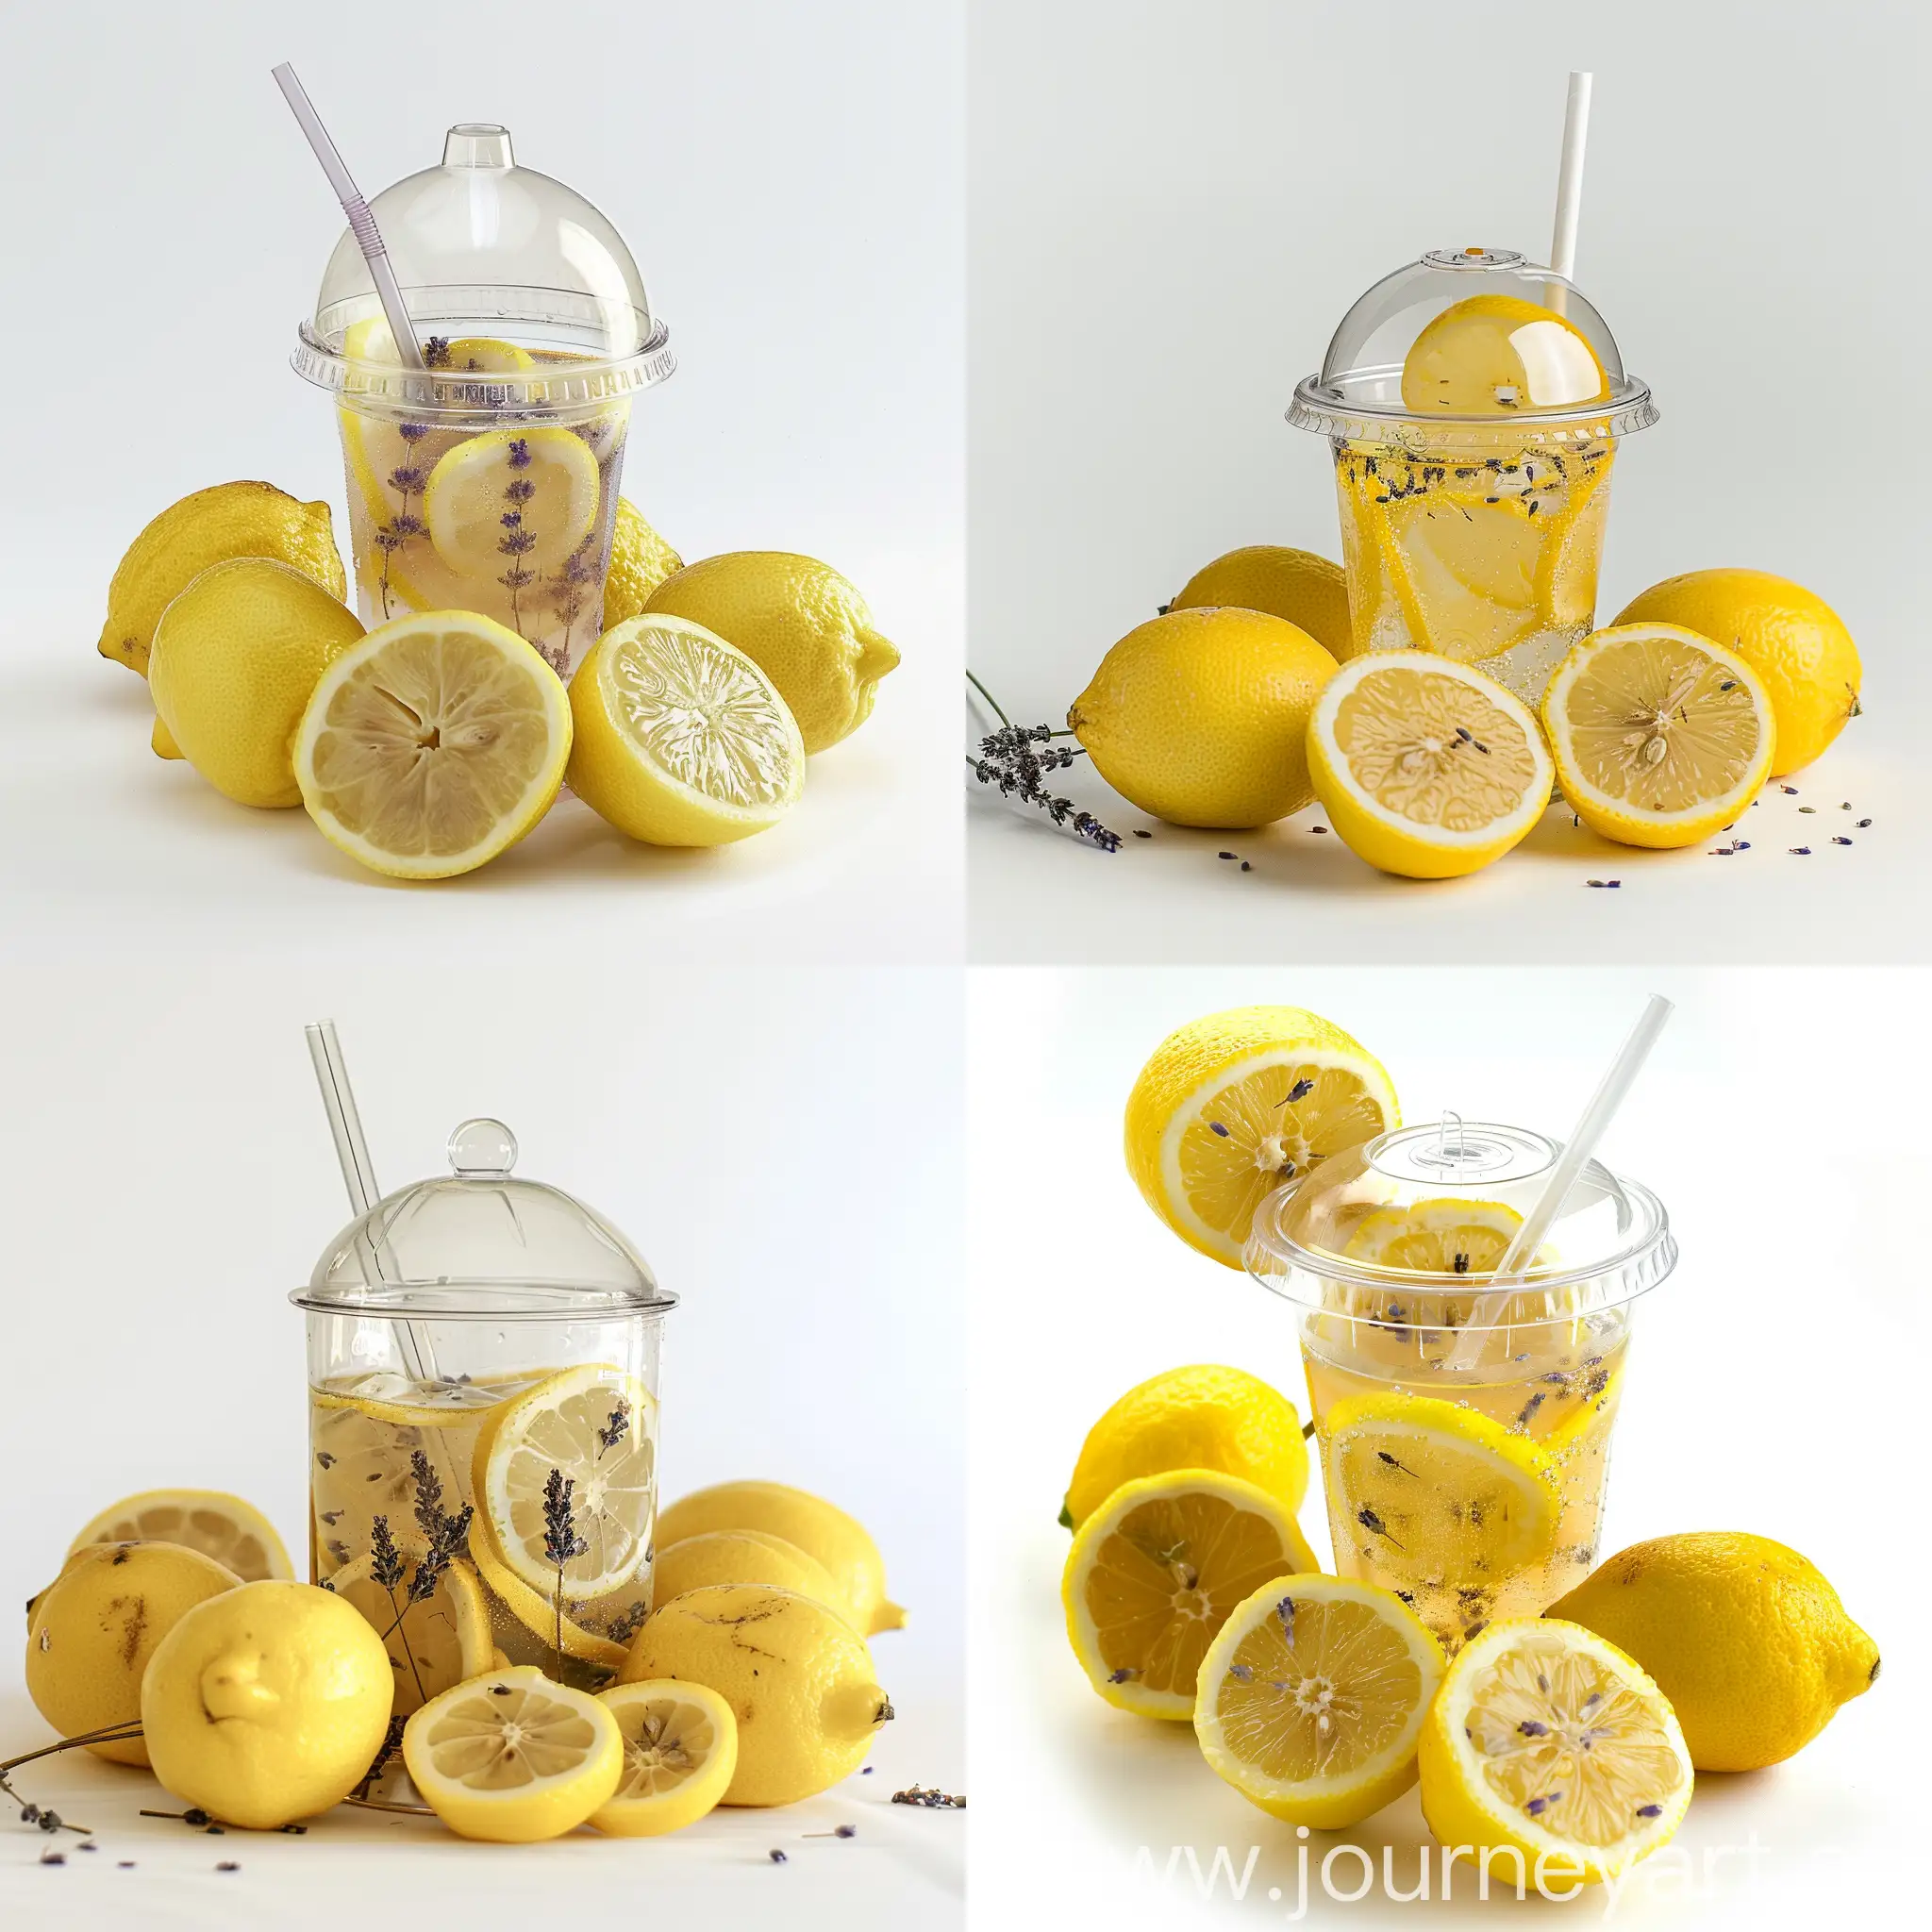 Сделай фото стакана с купольной крышкой и трубочкой, внутри стакана лимонад со вкусом лаванда, вокруг лимоны, на белом фоне 